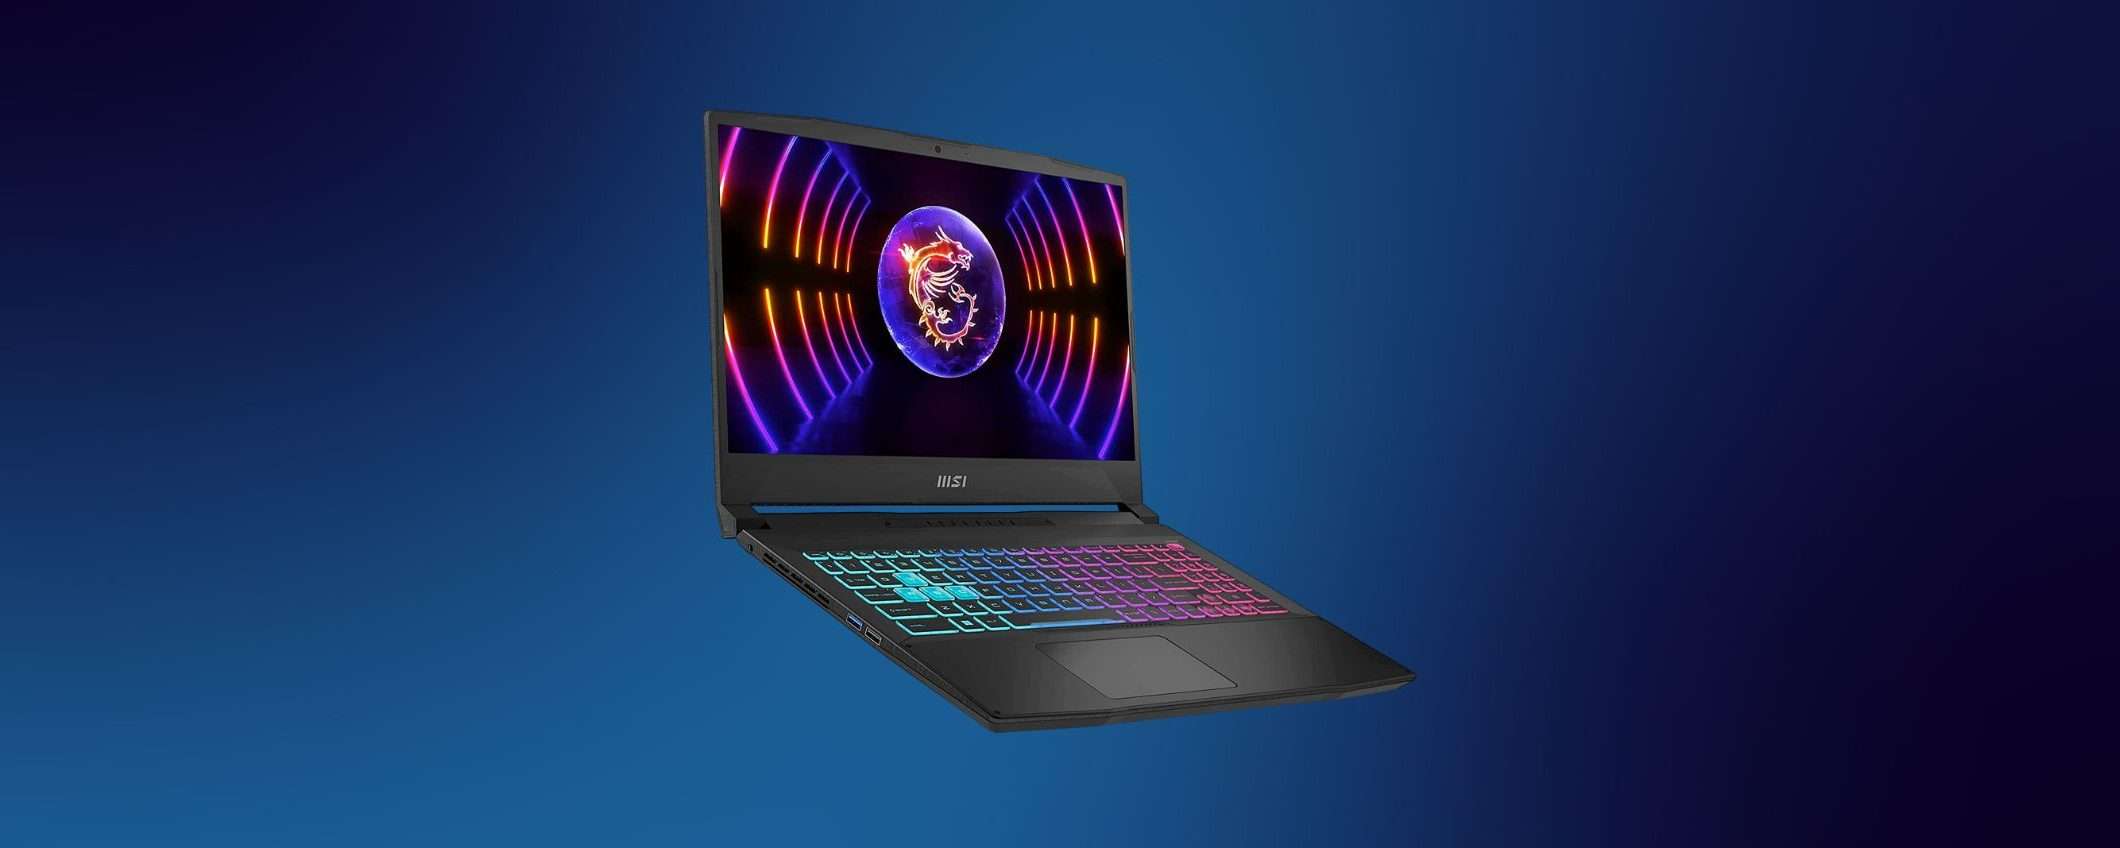 MSI Katana 15 in offerta su Amazon: il laptop da gaming oggi a meno di 900€